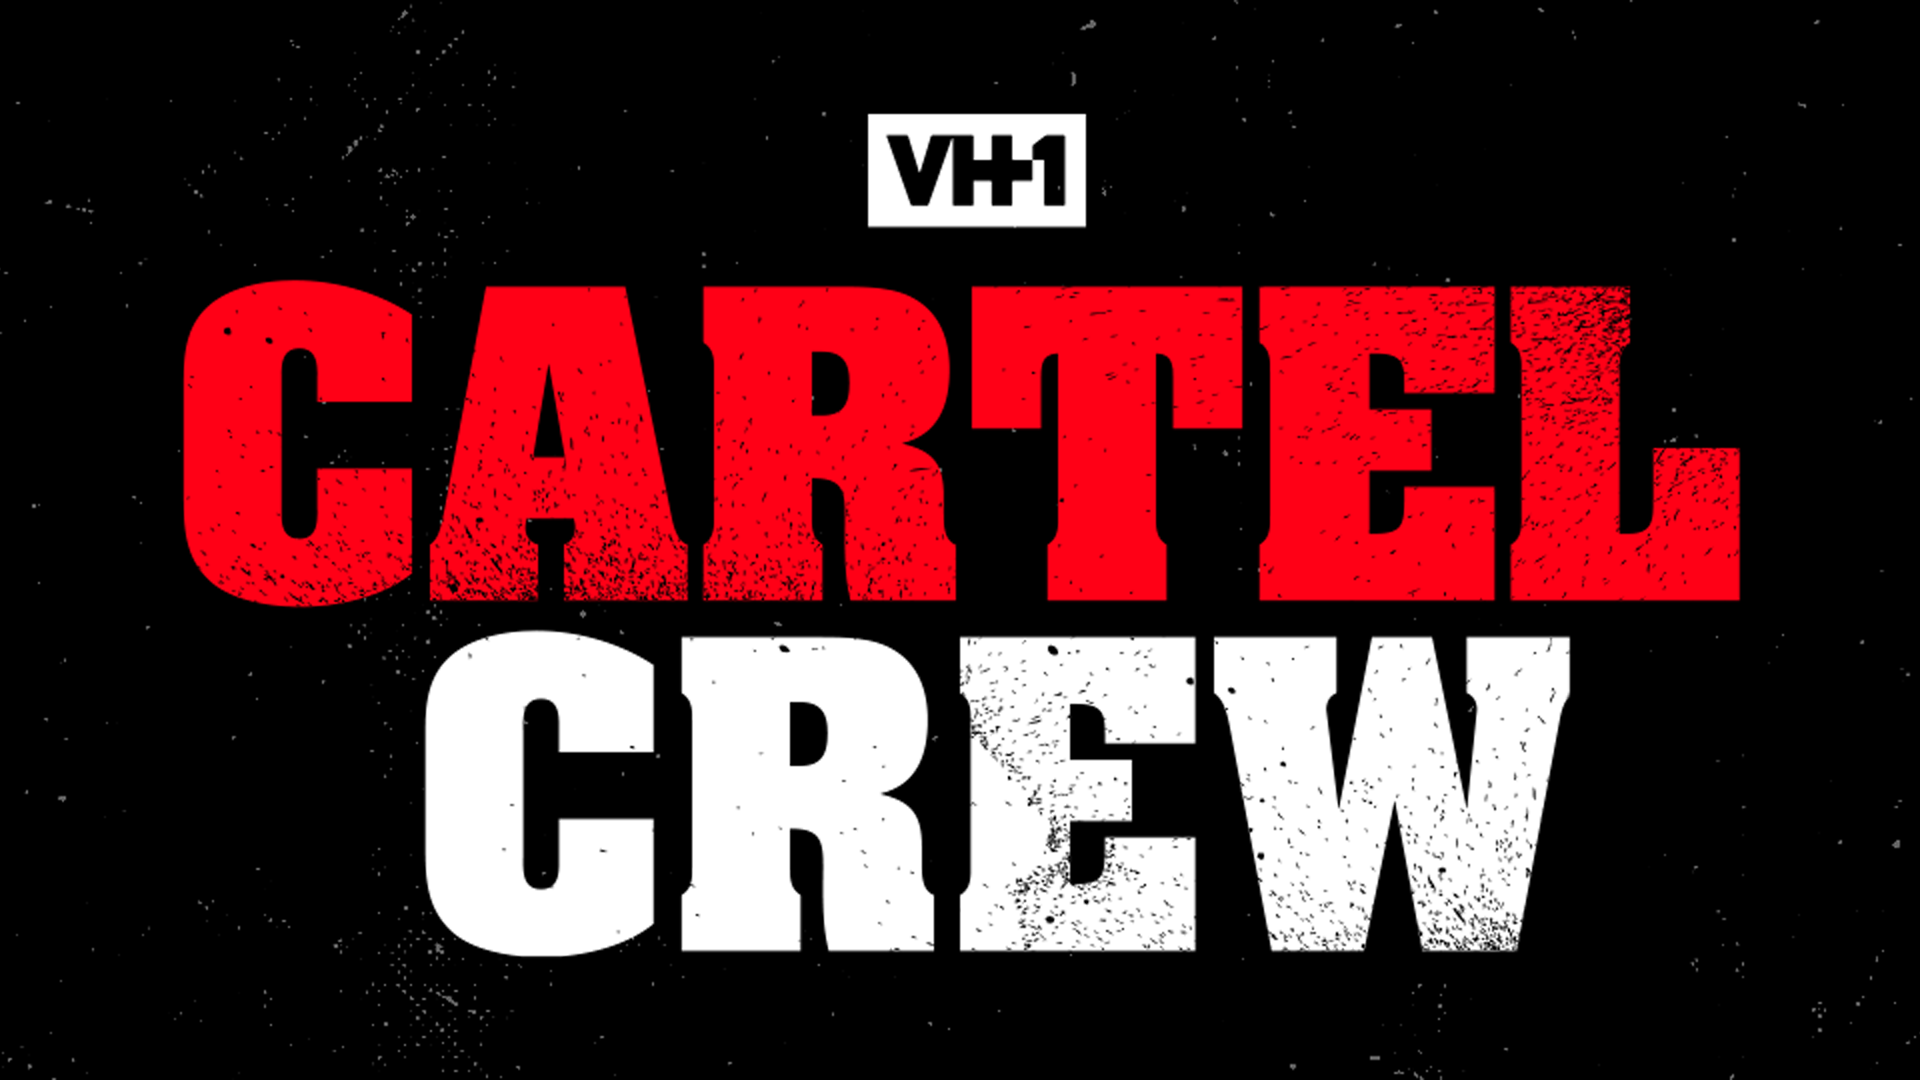 Cartel Crew